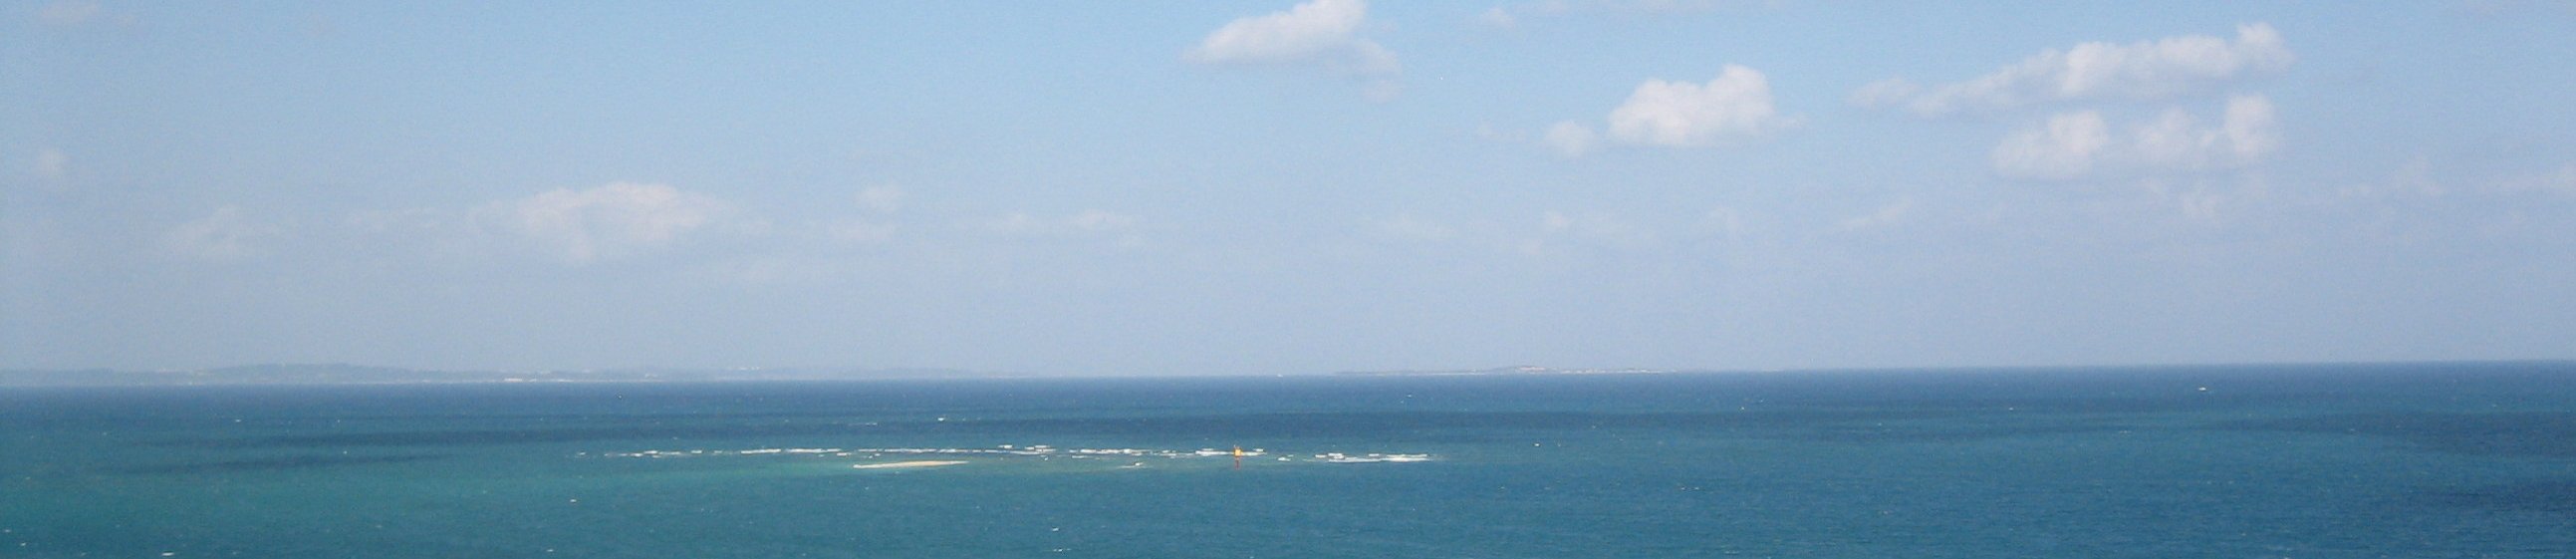 沖縄 banner image